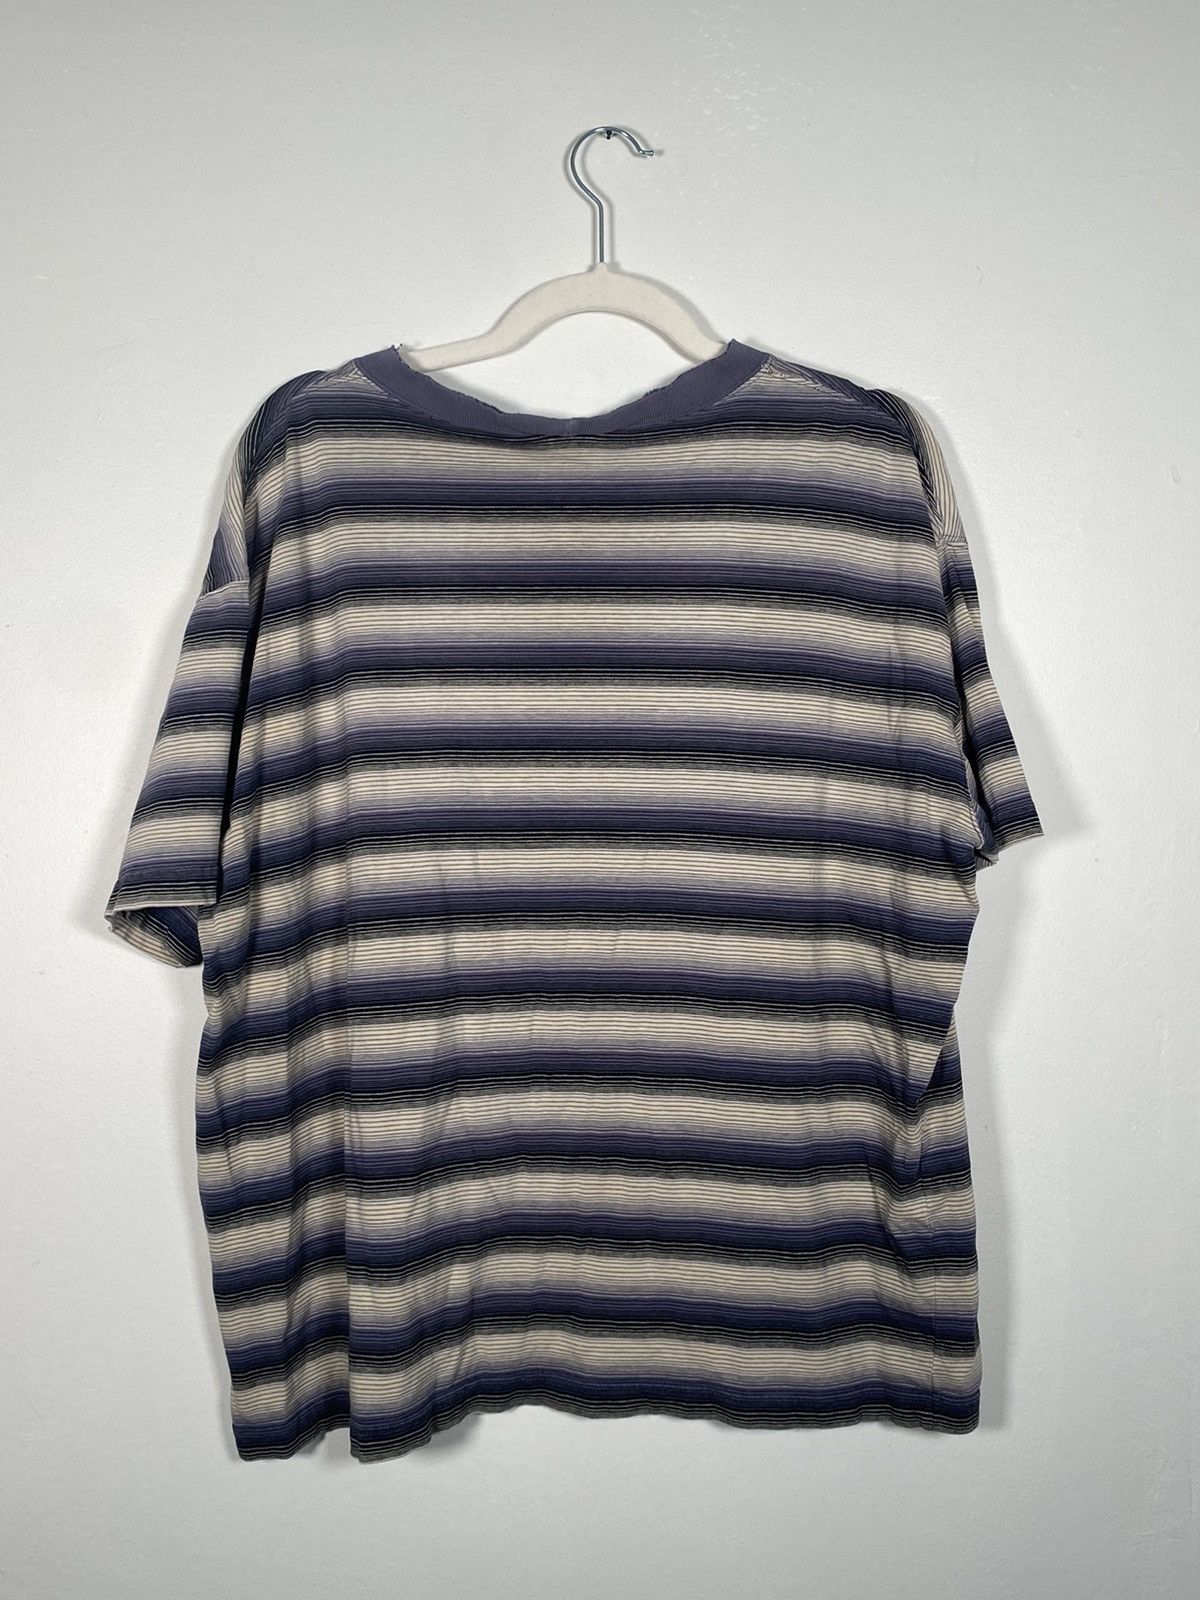 Vintage Striped T-Shirt Size US L / EU 52-54 / 3 - 4 Thumbnail